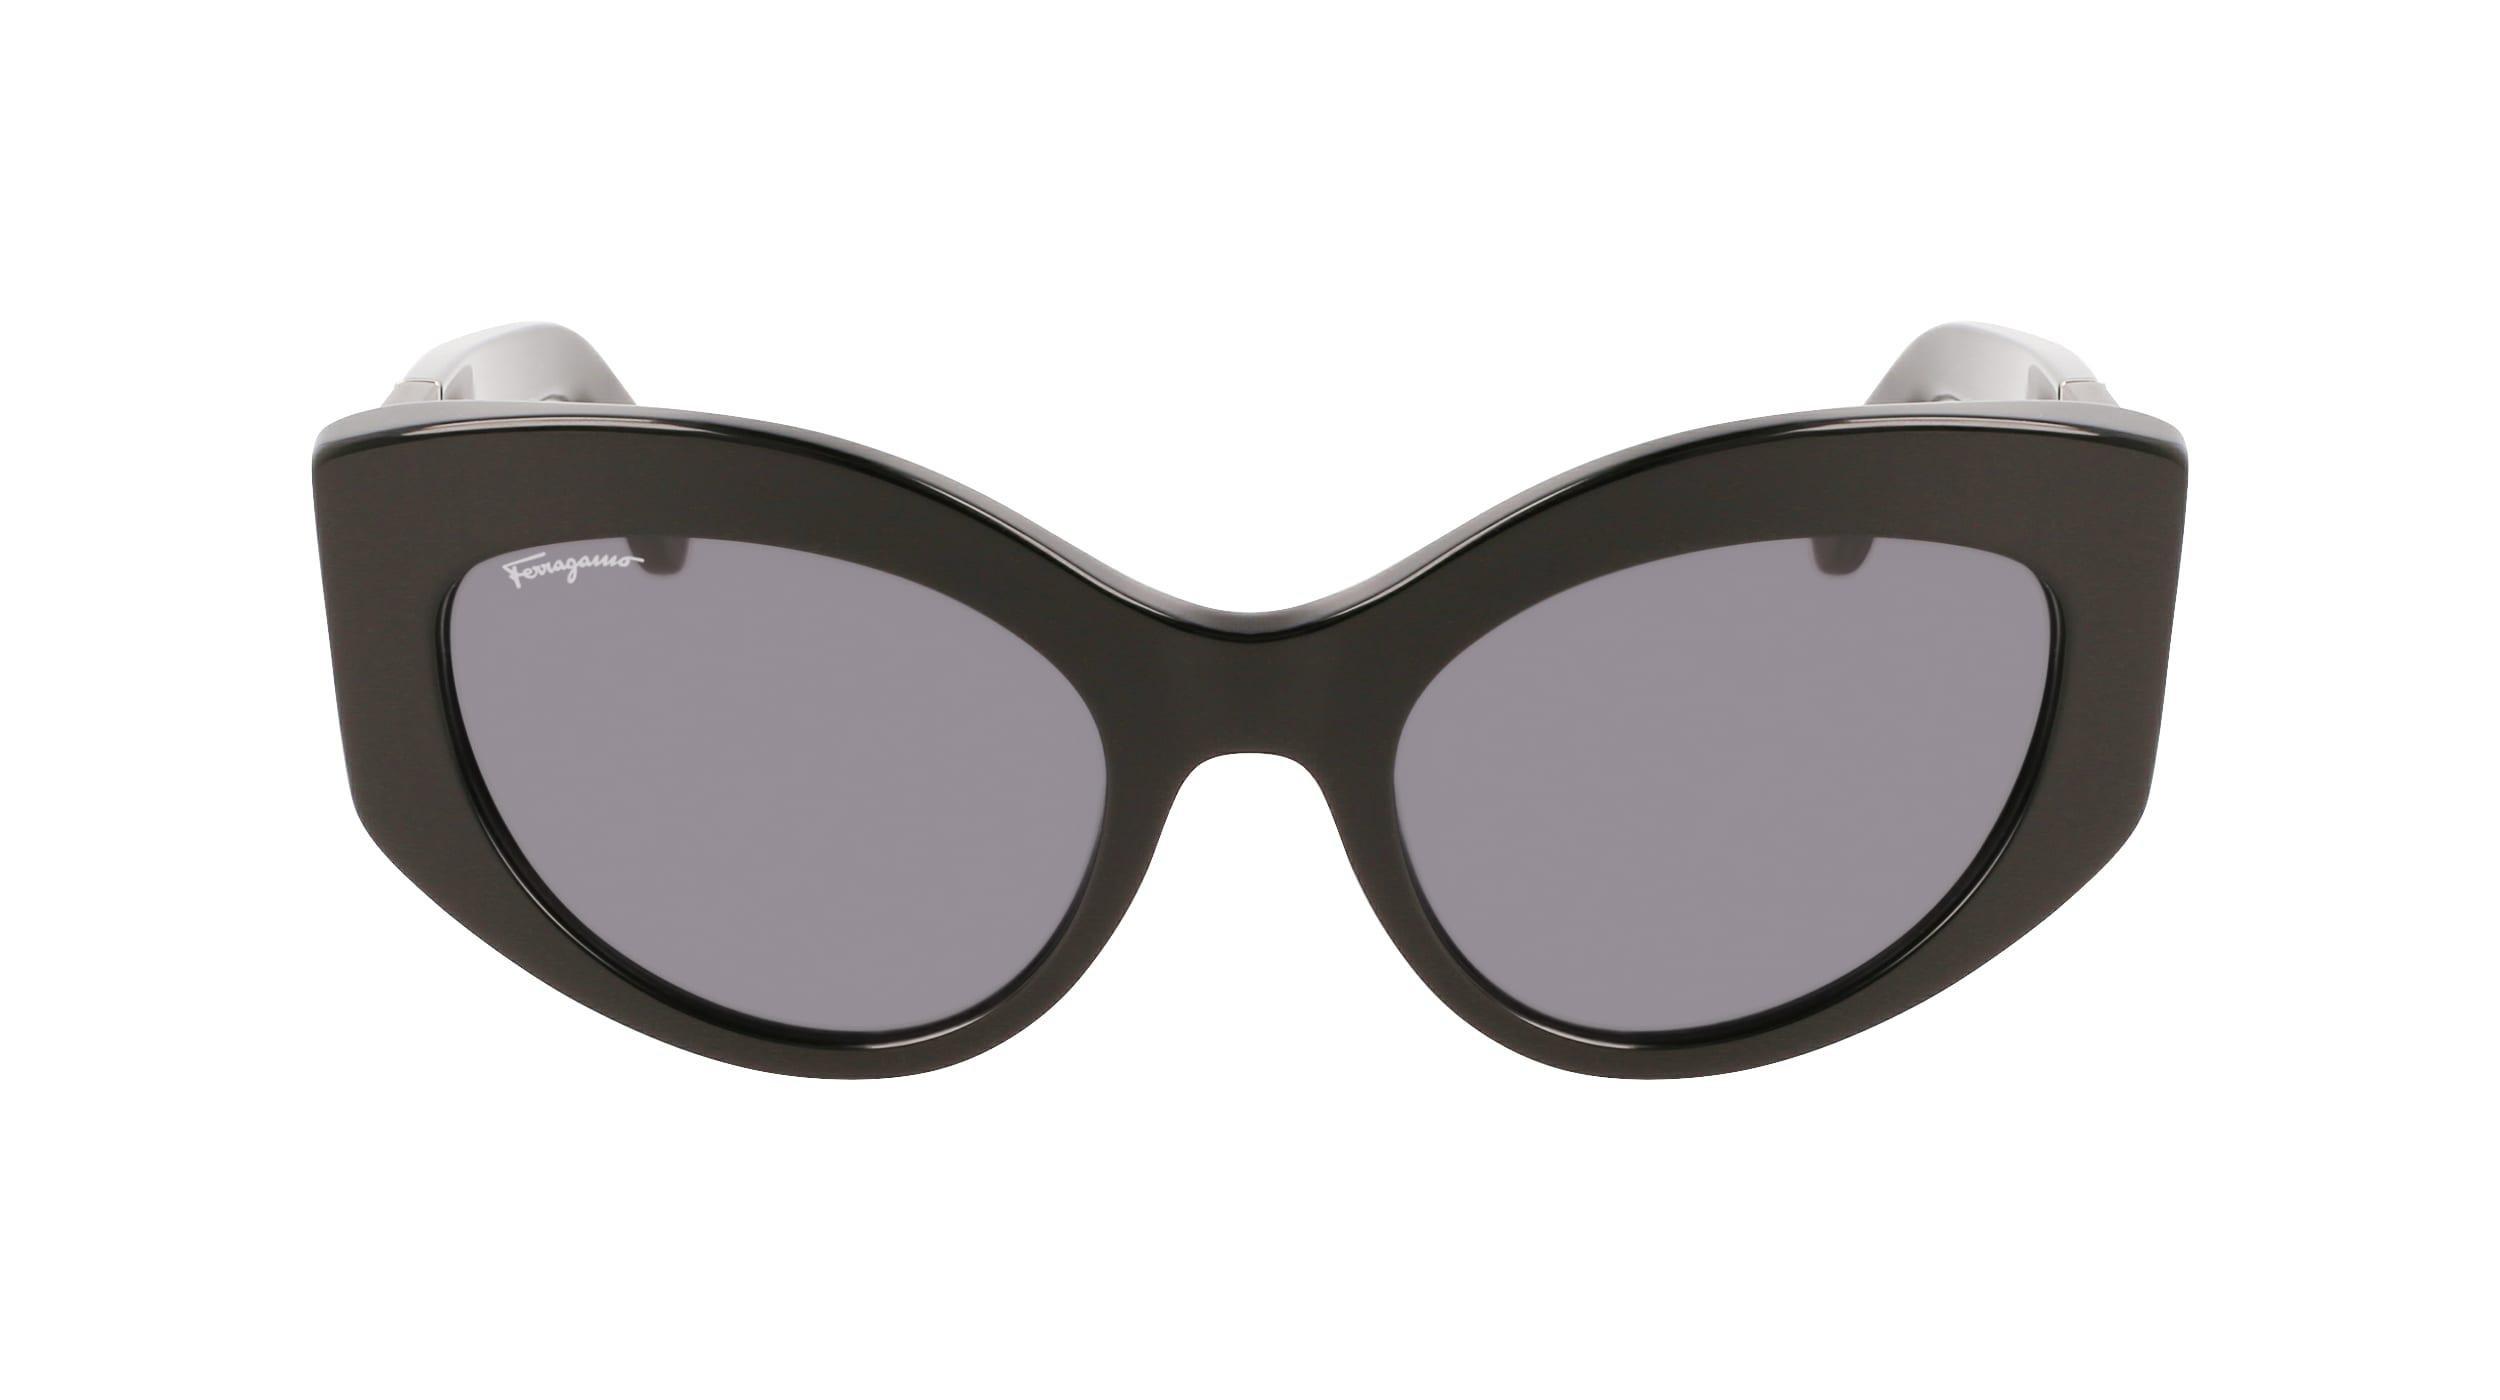 SALVATORE FERRAGAMO - Ferragamo Women Black Butterfly Sunglasses - Sf1044S